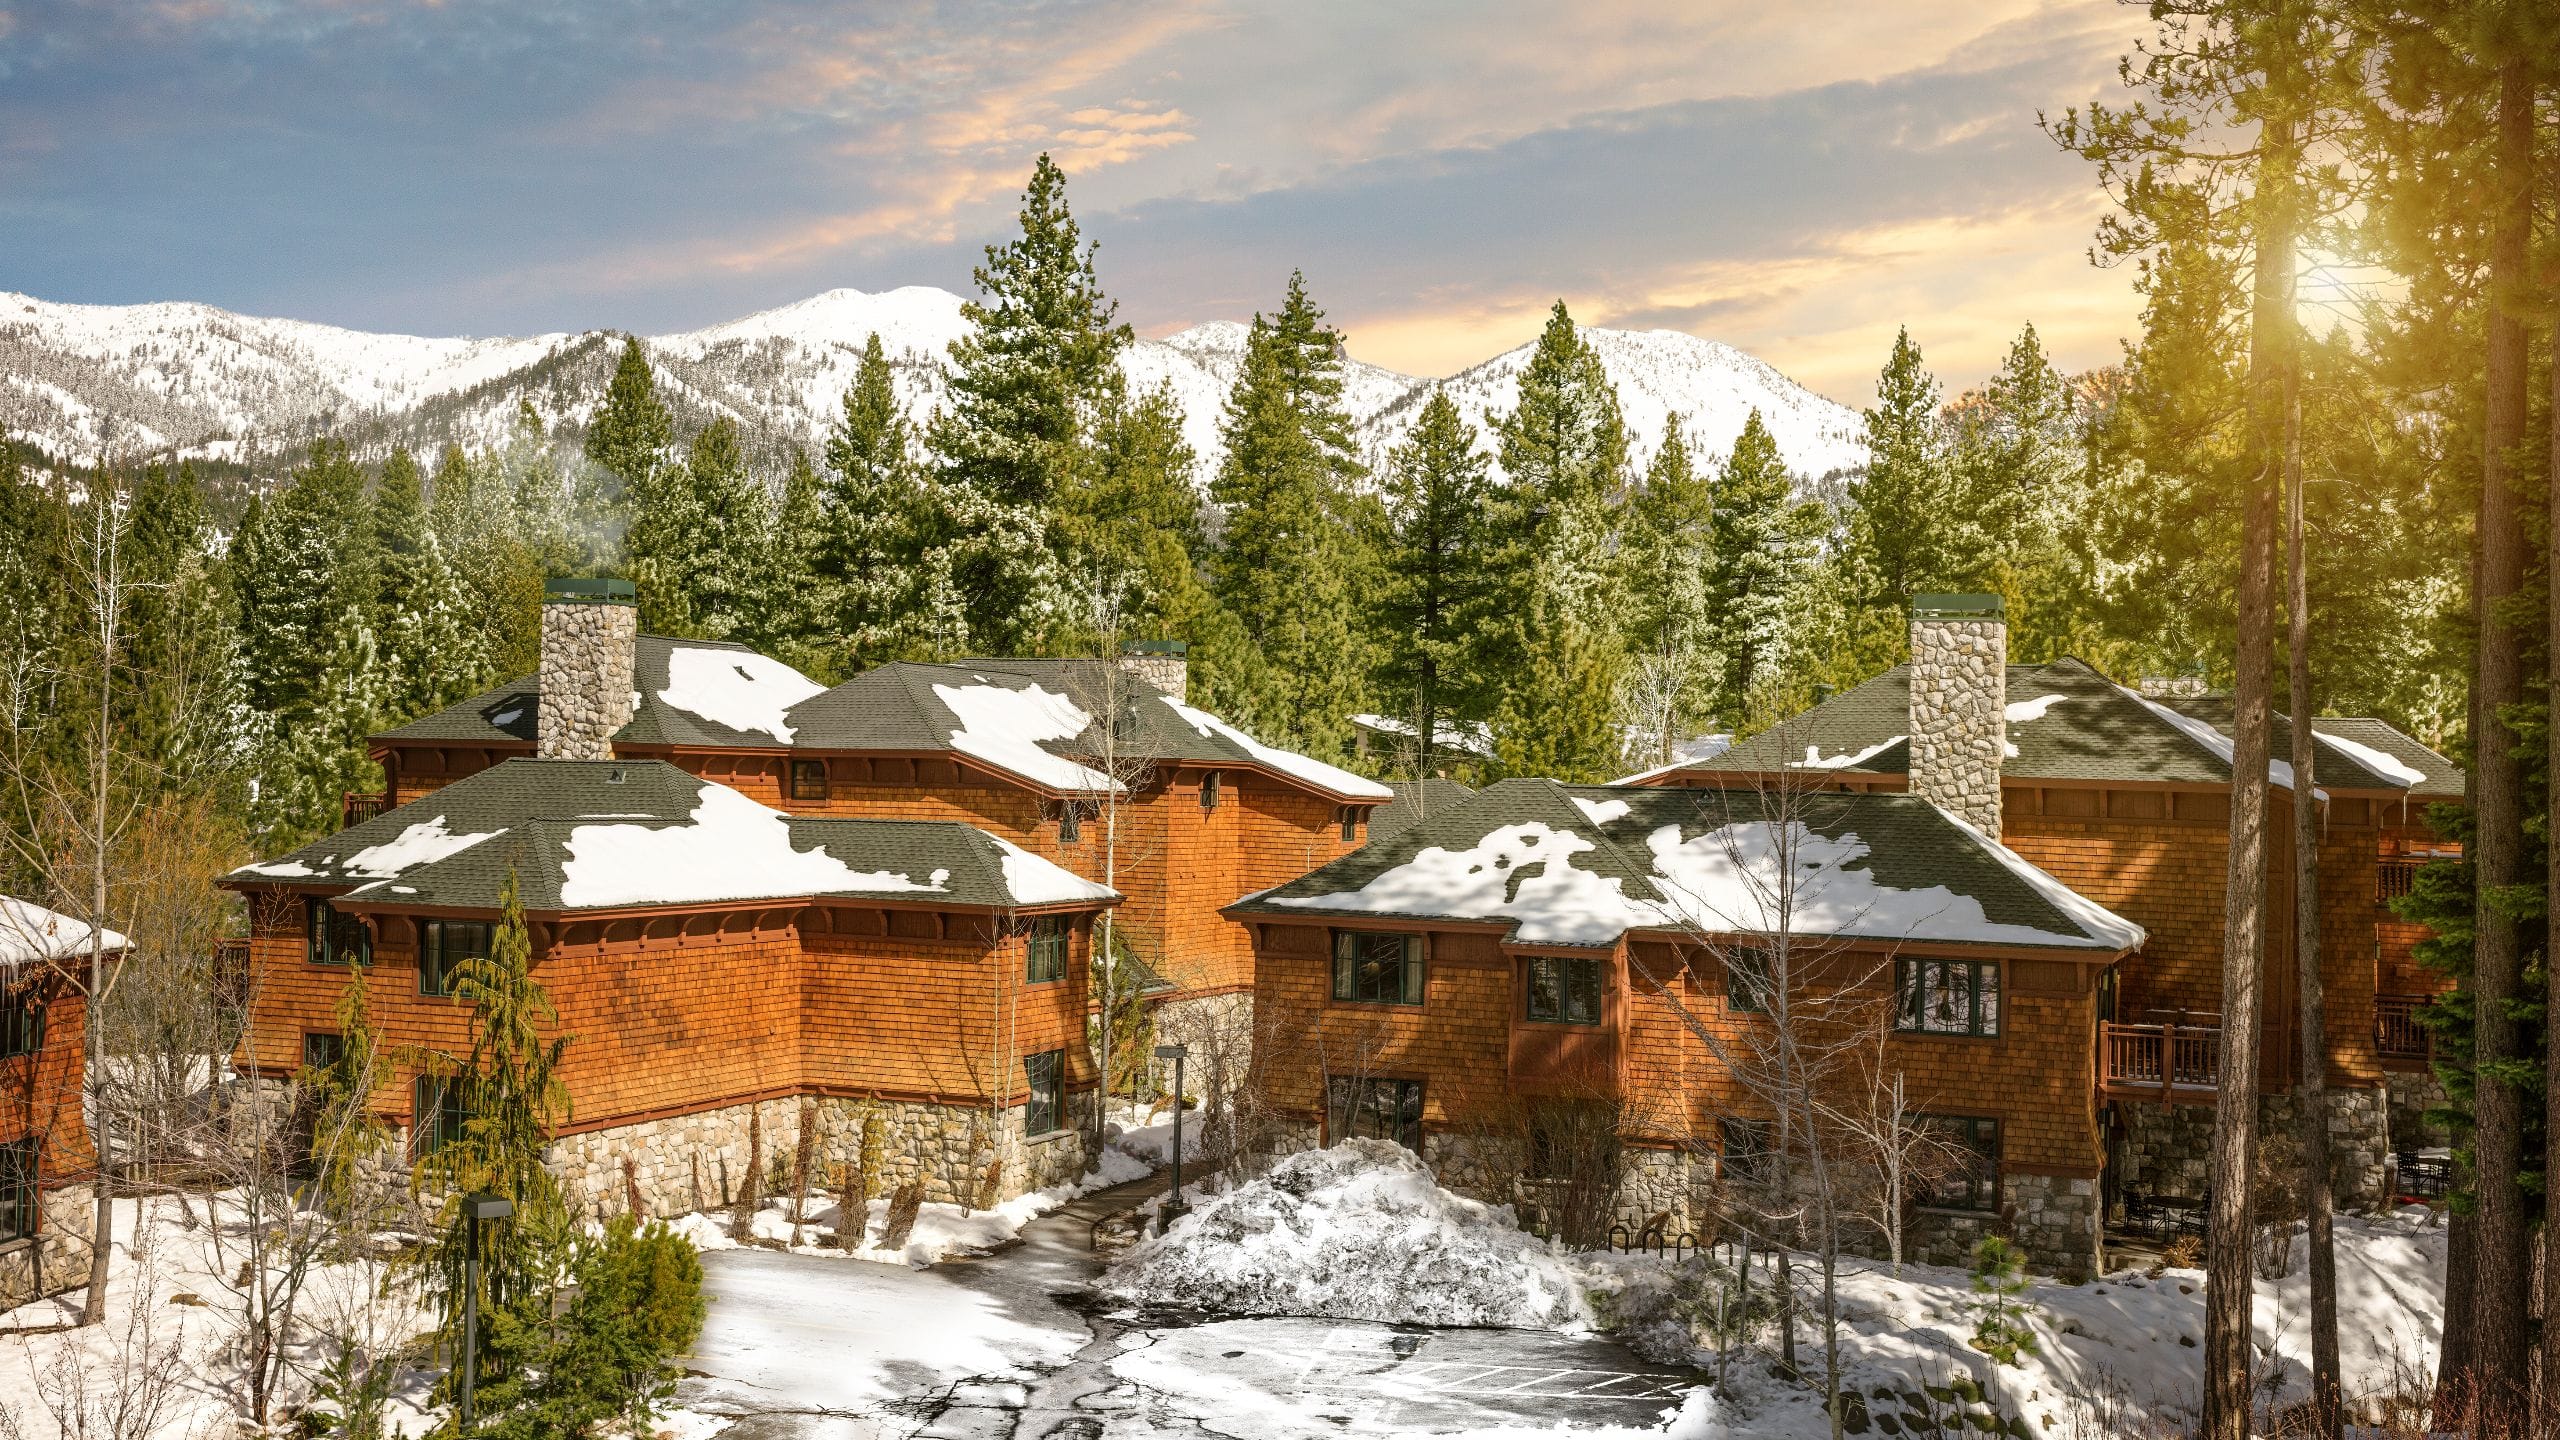 Hyatt Residence Club Lake Tahoe High Sierra Lodge